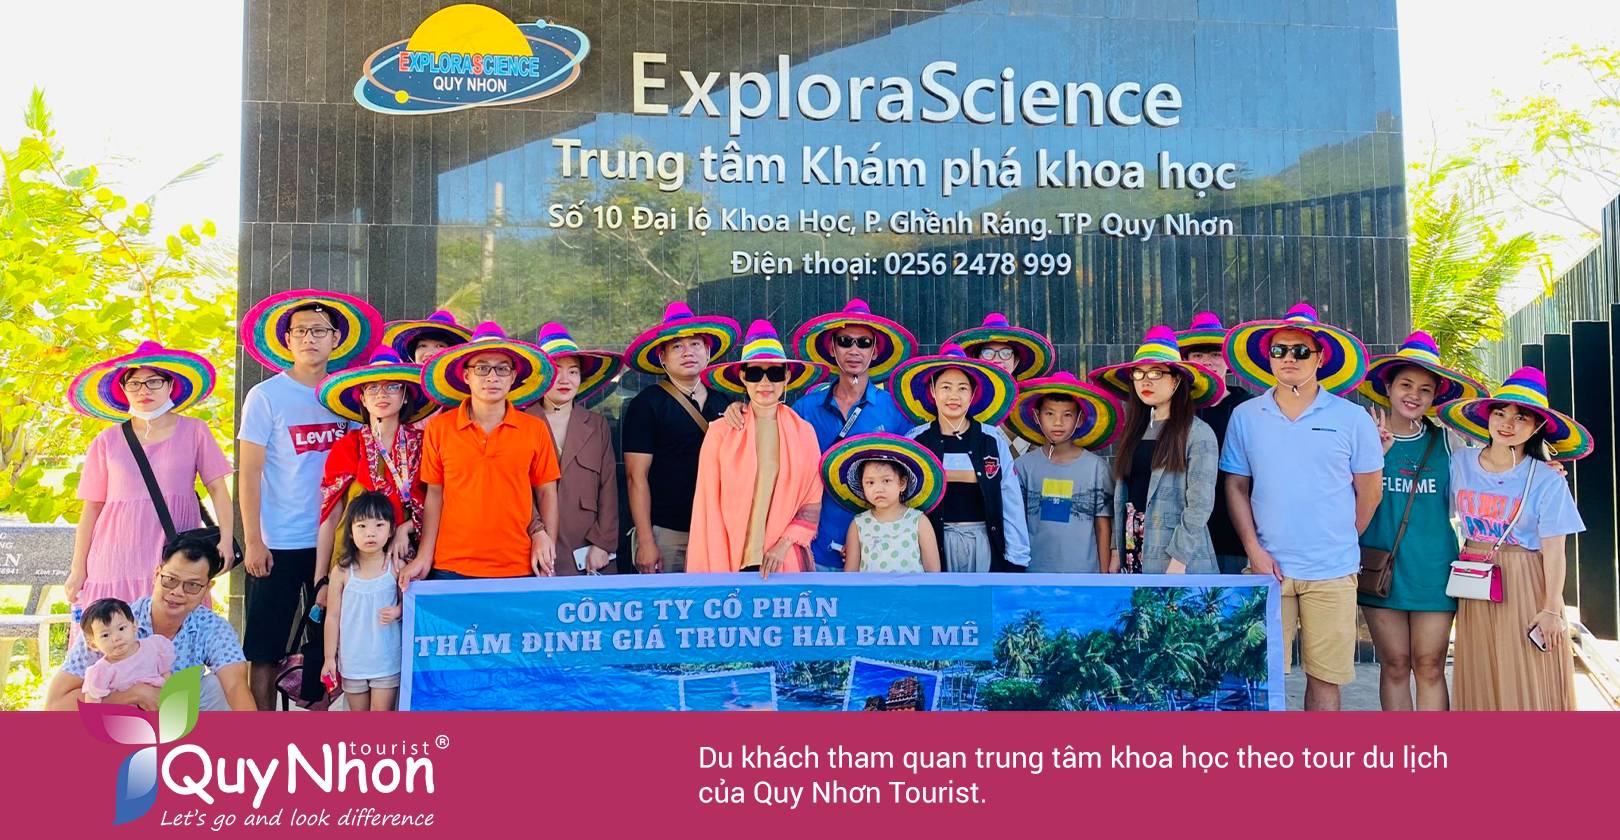 Du khách tham quan trung tâm khoa học theo tour du lịch của Quy Nhơn Tourist.